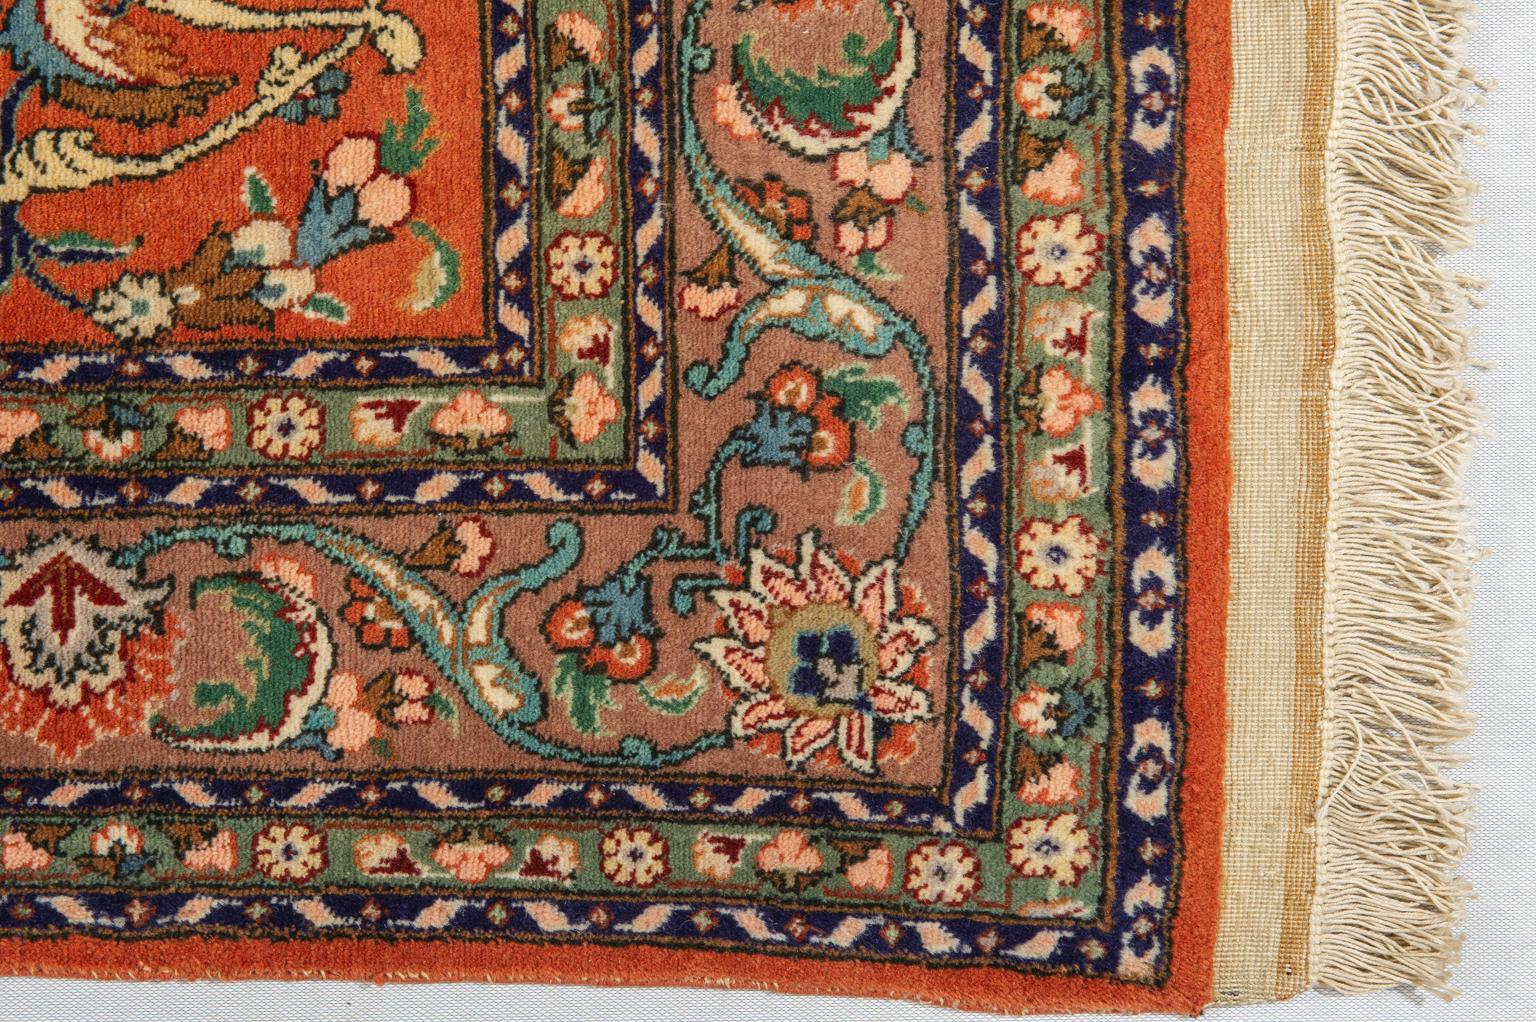 Central Asian Unique Specimen of a Vintage Oriental Carpet For Sale